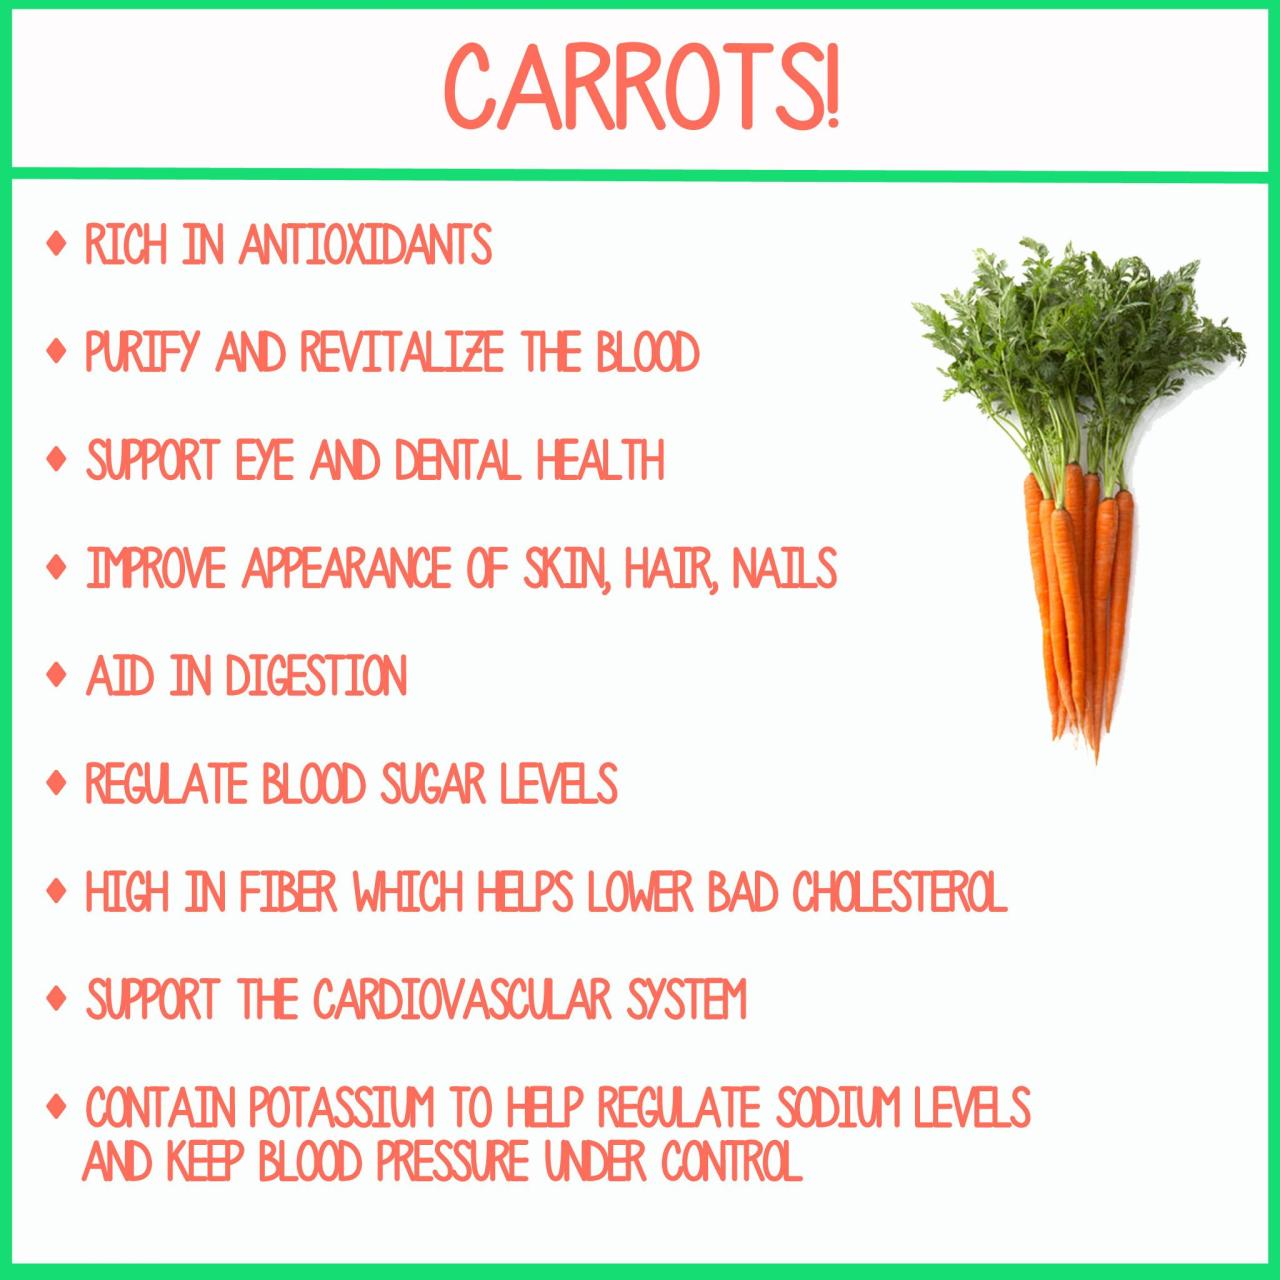 Manfaat makan wortel mentah setiap hari